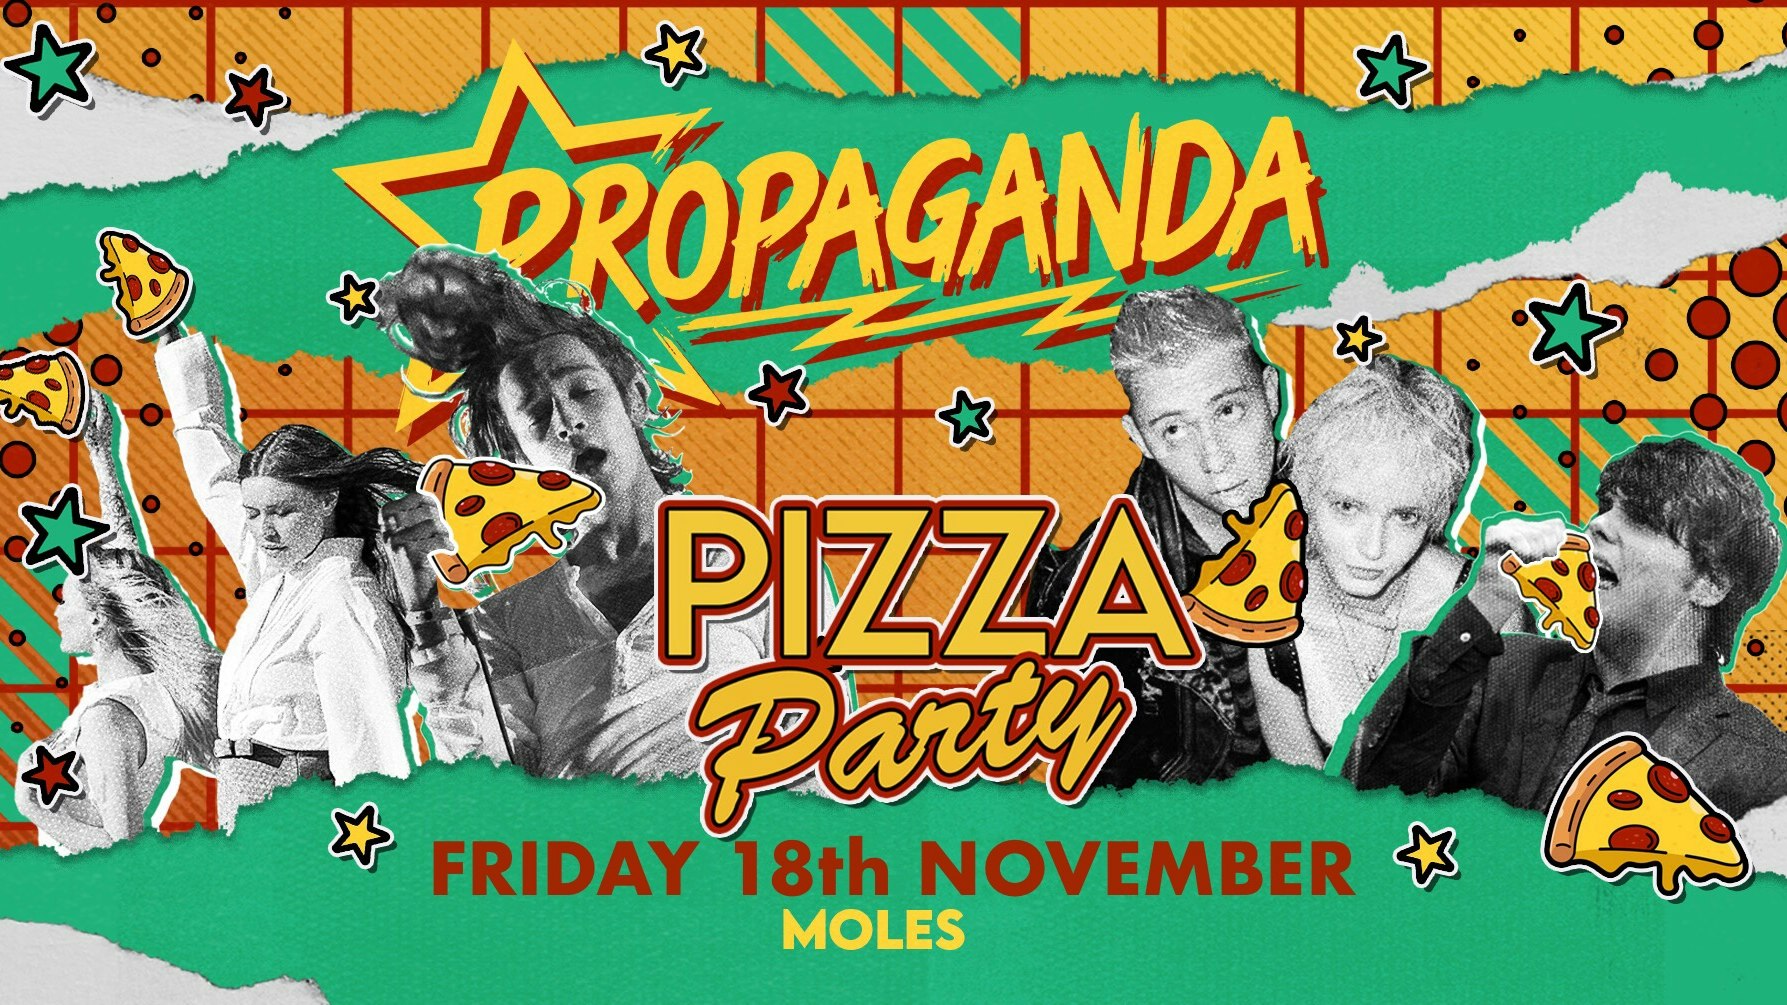 Propaganda Bath – Pizza Party!